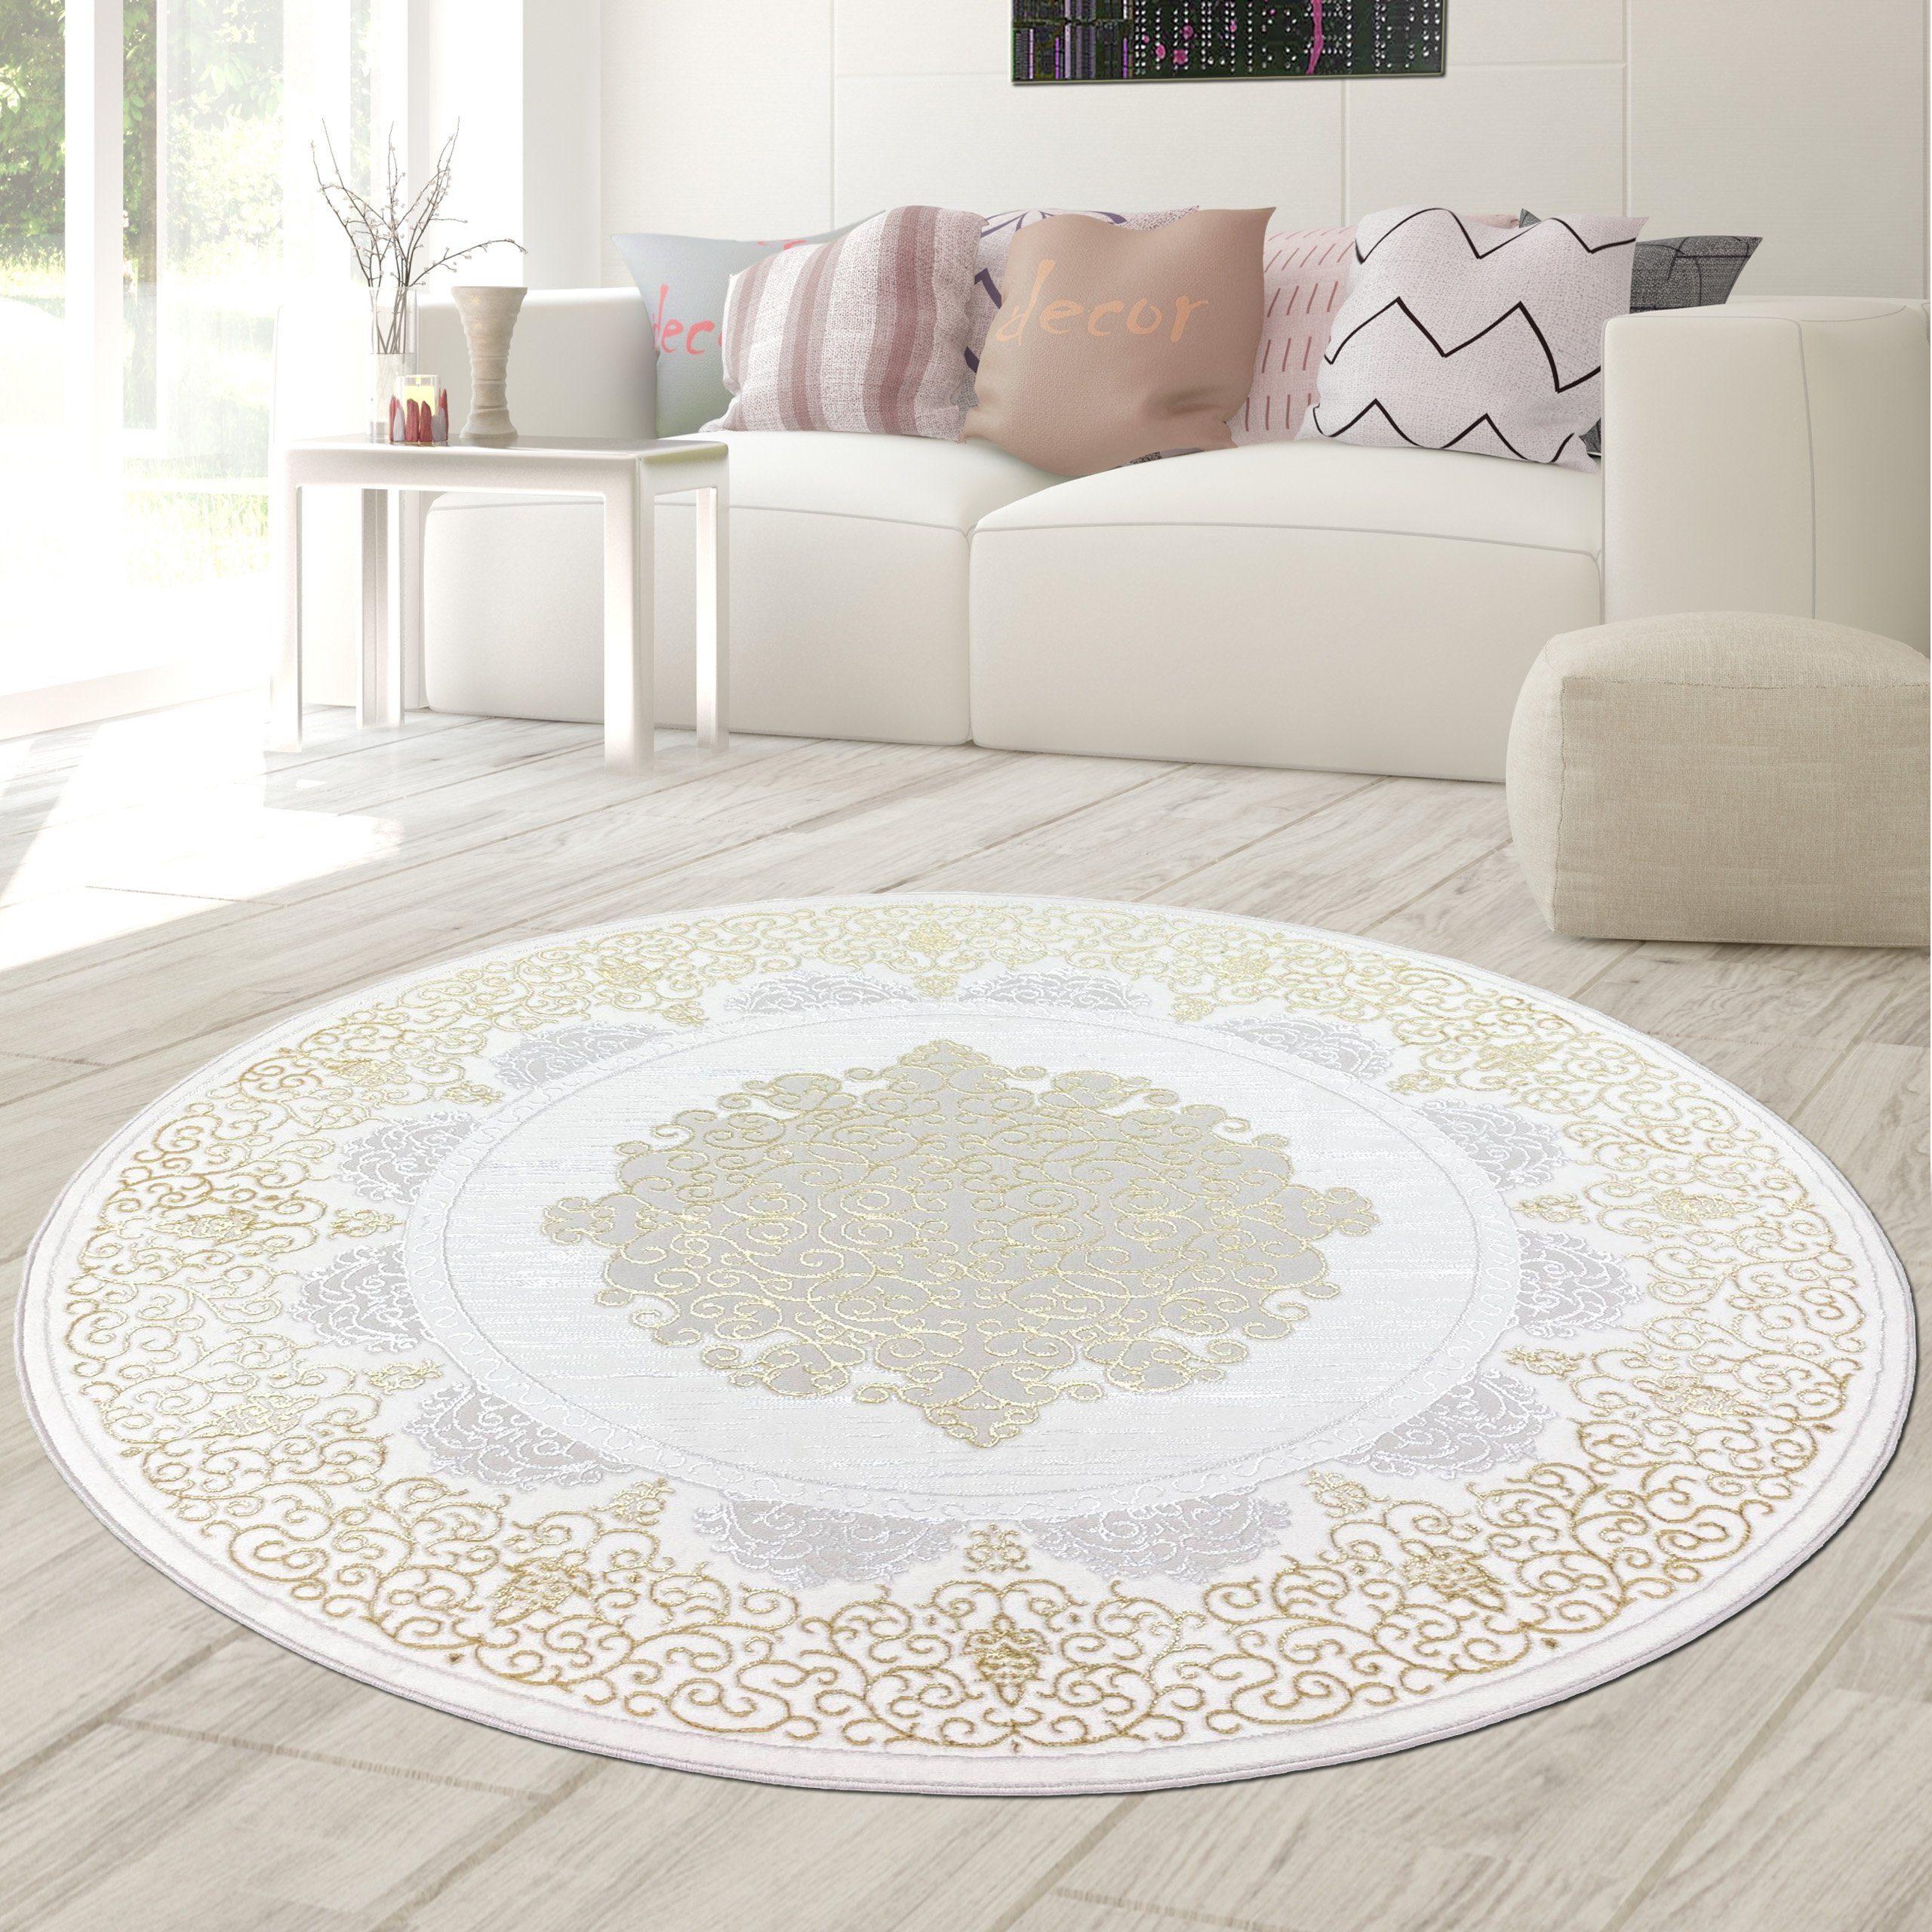 Teppich Orientalischer Designerteppich mit Ornament in weiß gold grau, Teppich-Traum, rund, Höhe: 8 mm